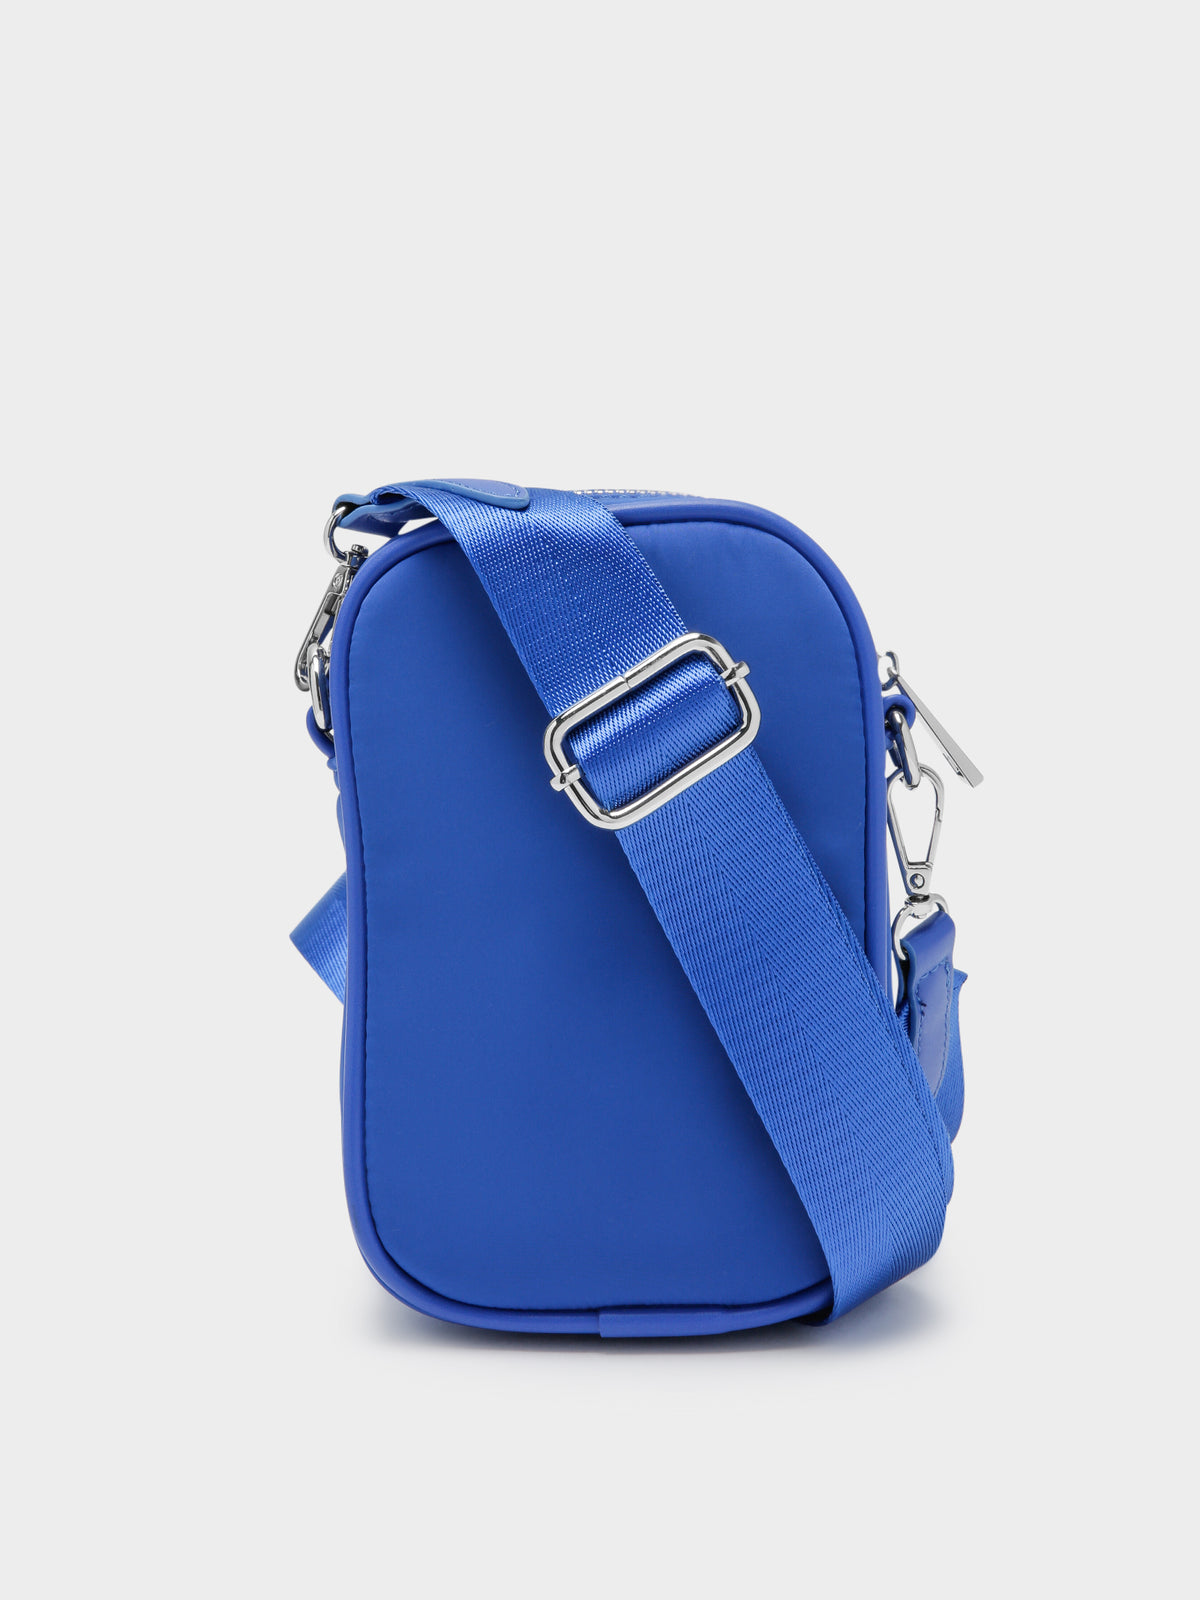 Didi Crossbody Bag in Cobalt Blue